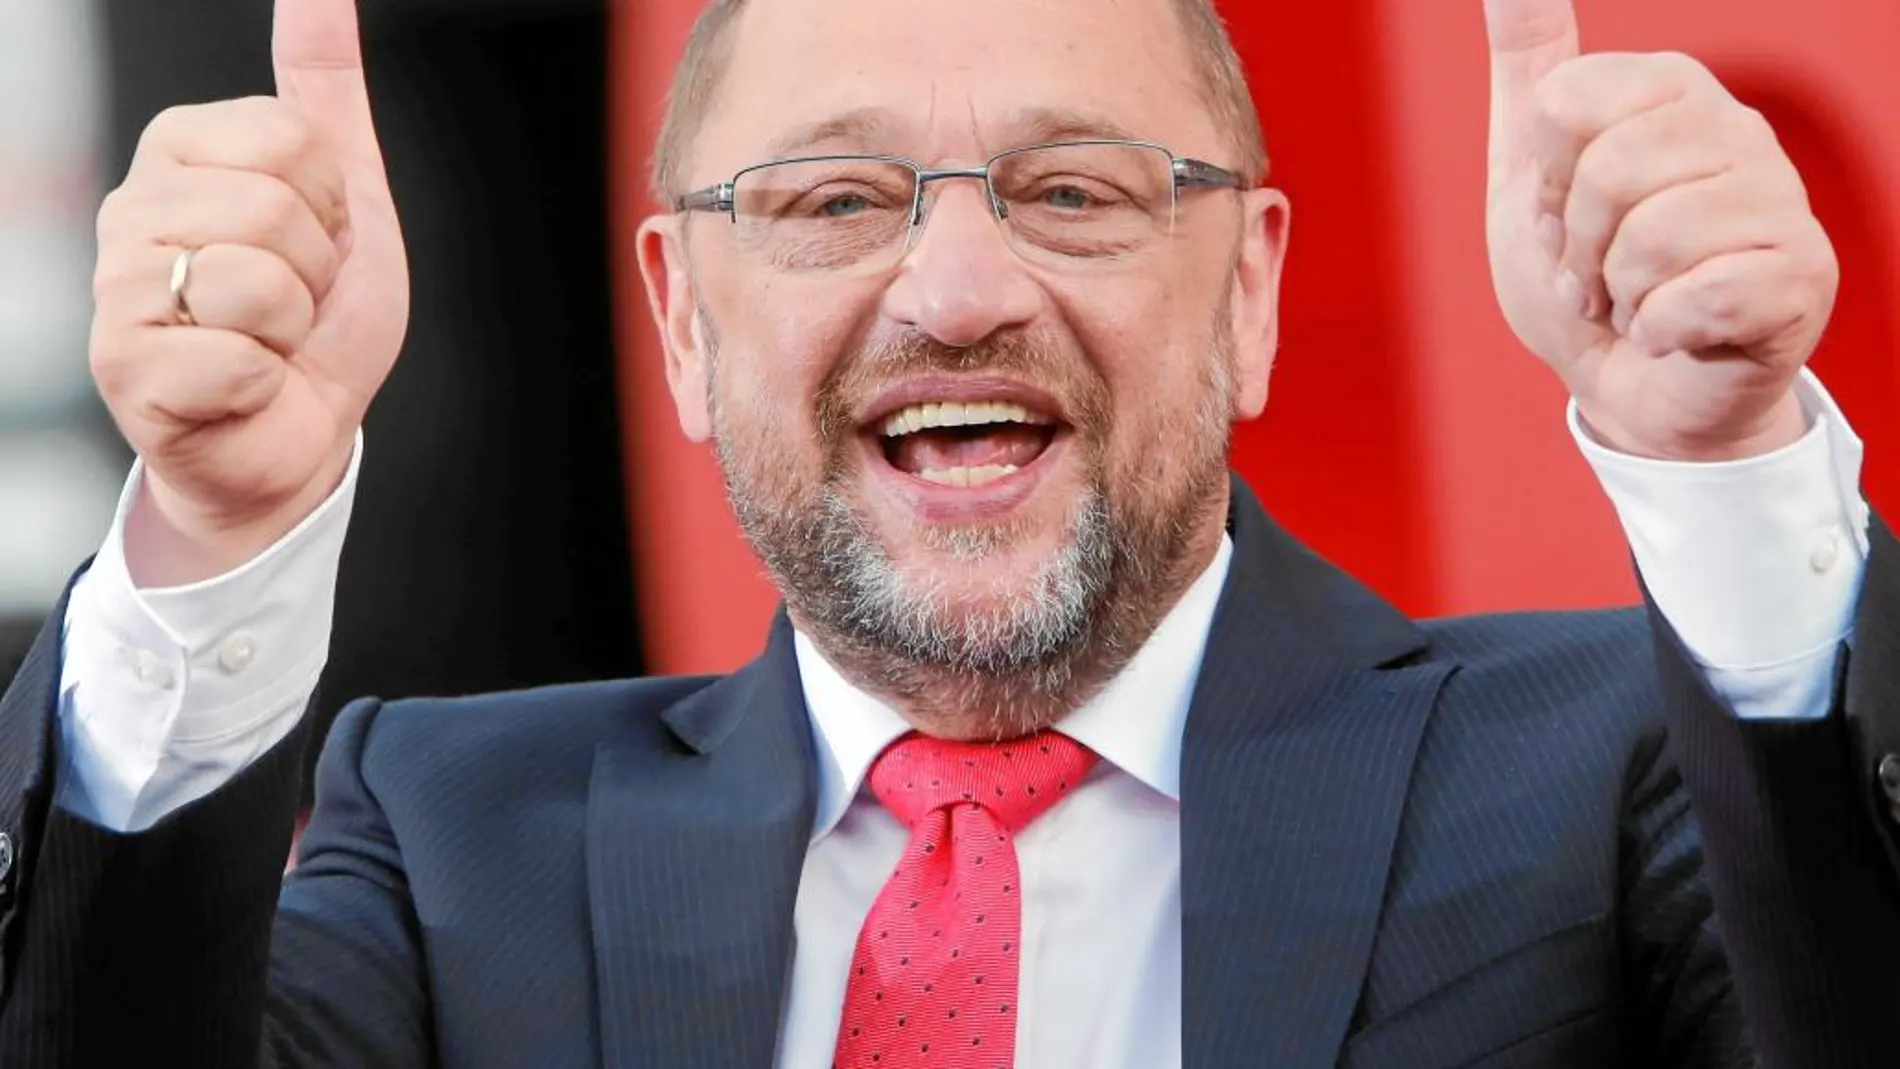 Martin Schulz confía aún en dar la sorpresa gracias al voto de los indecisos